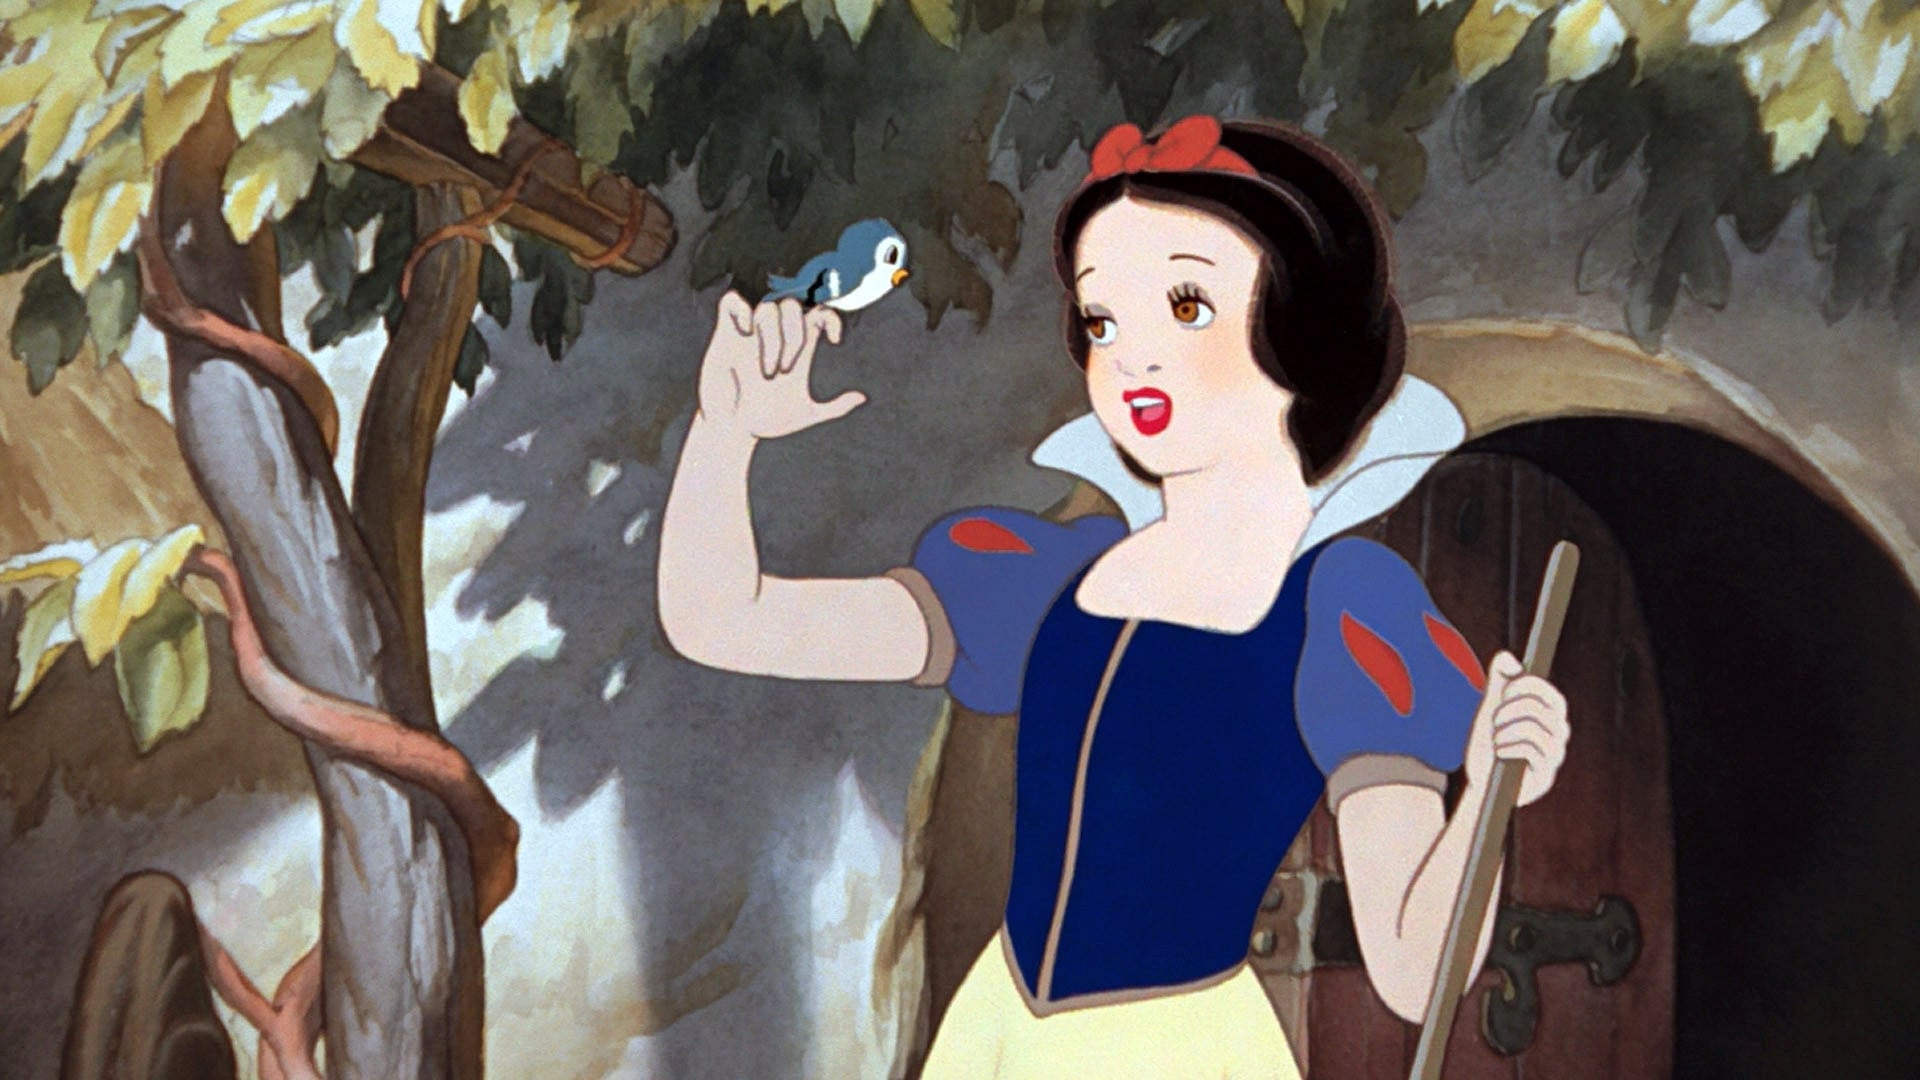 Poster Phim Nàng Bạch Tuyết và Bảy Chú Lùn (Snow White and the Seven Dwarfs)